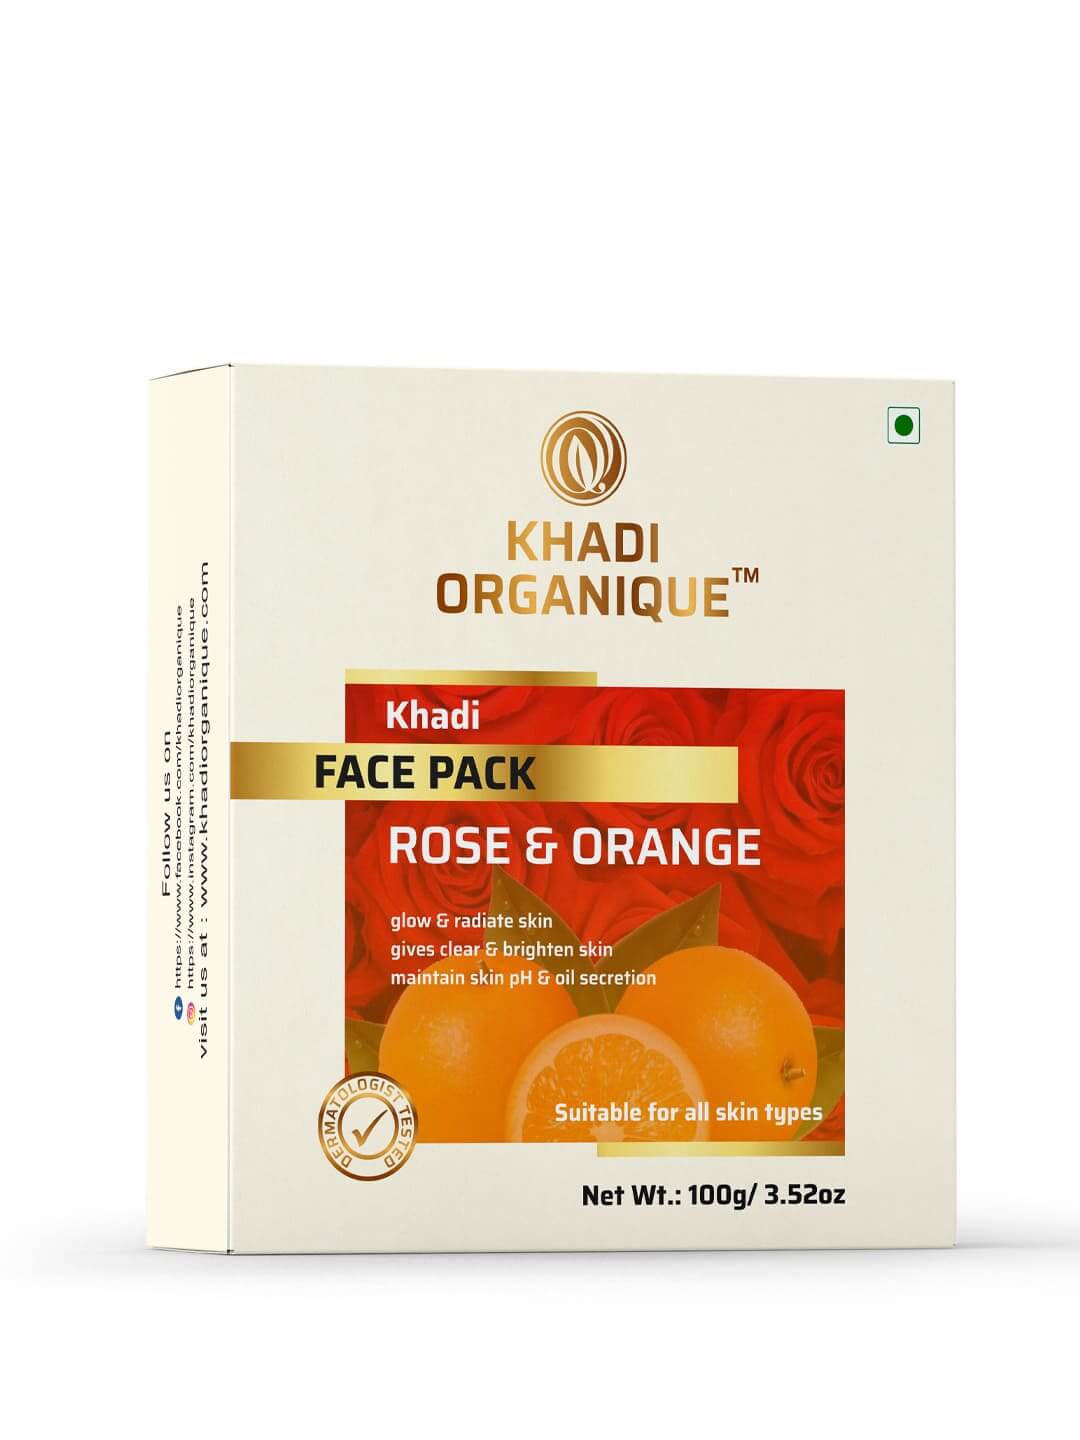 Khadi Organique Rose & Orange face pack